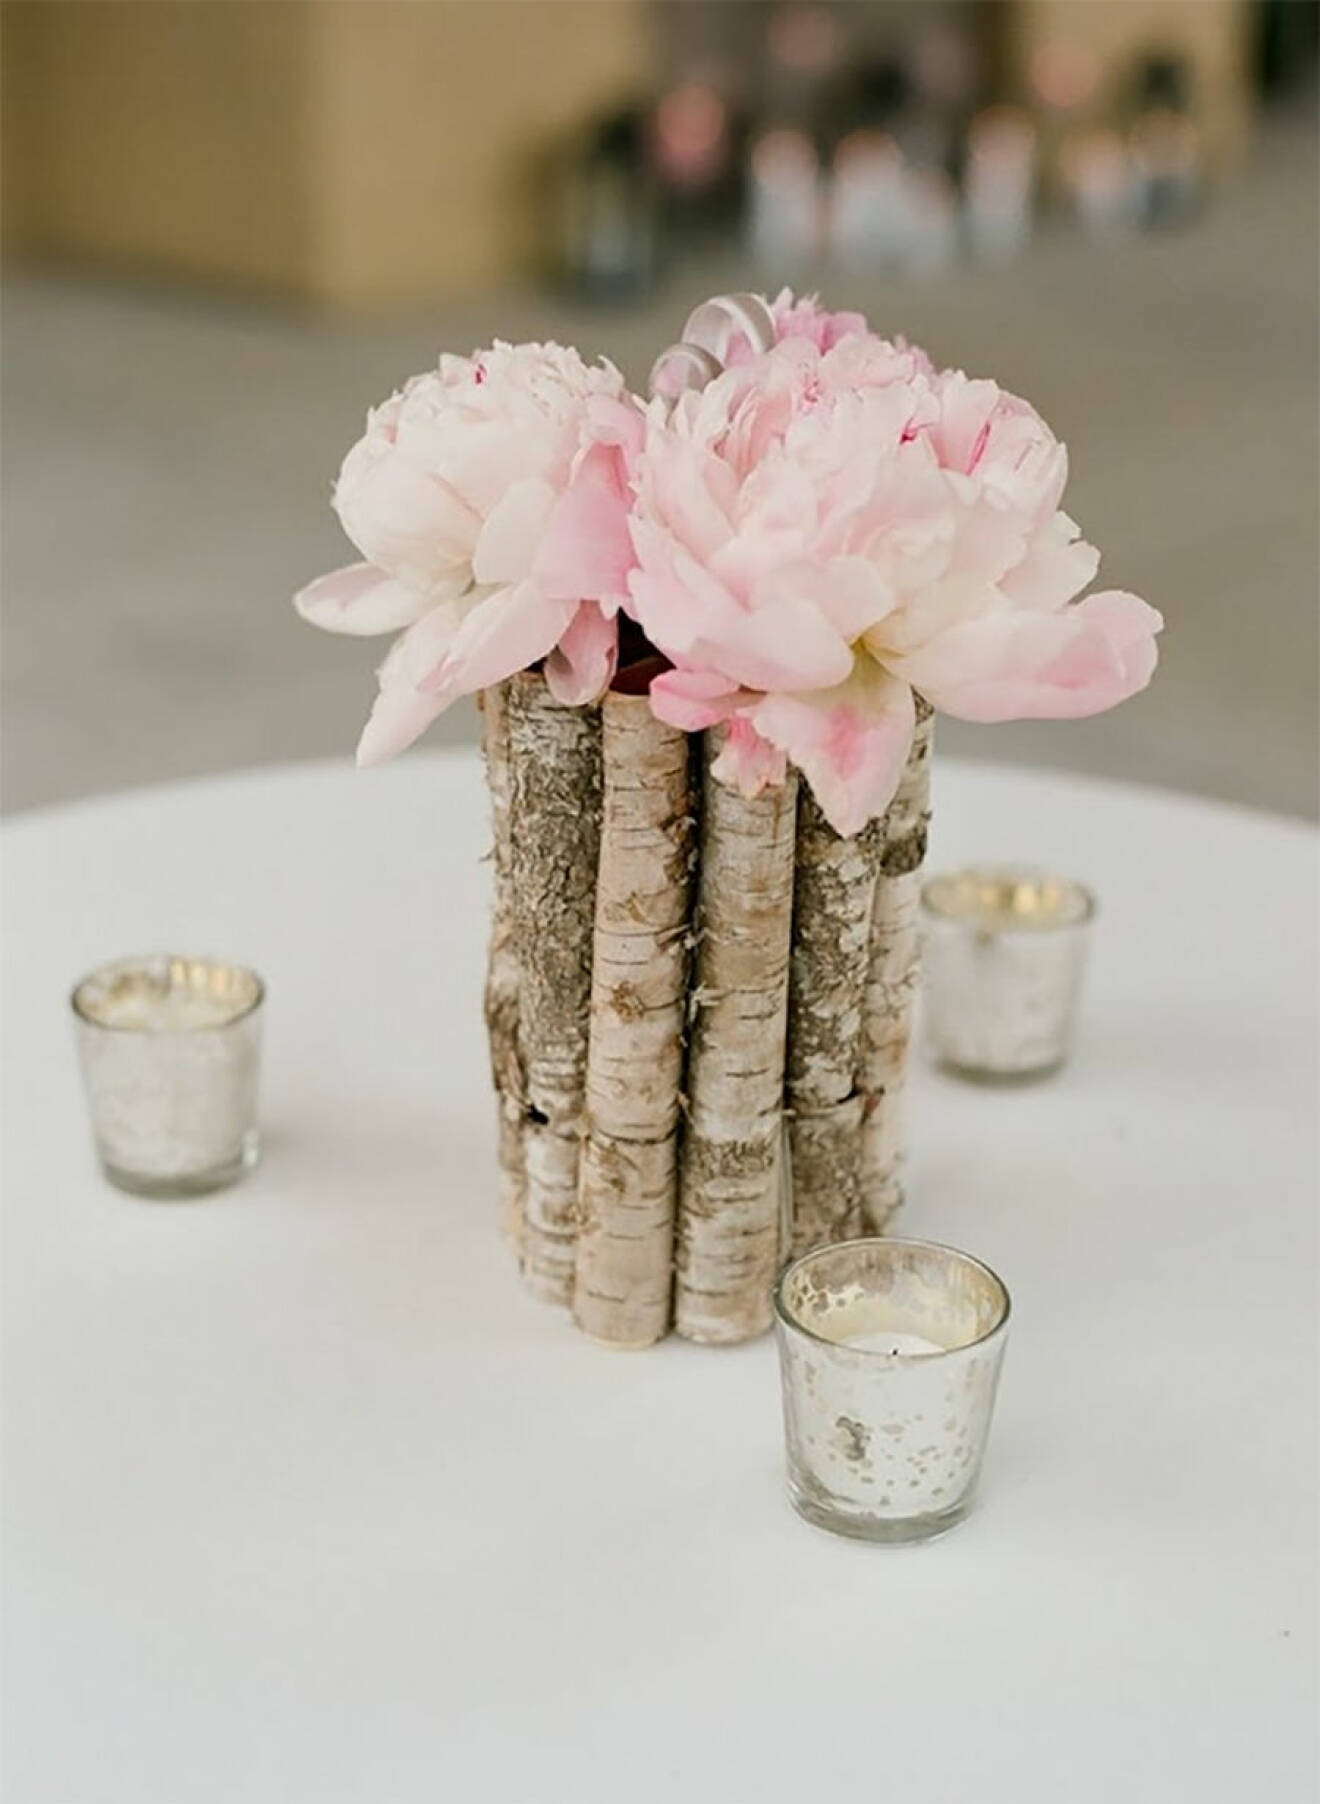 Vas gjord av pinnar - bröllopsdekoration